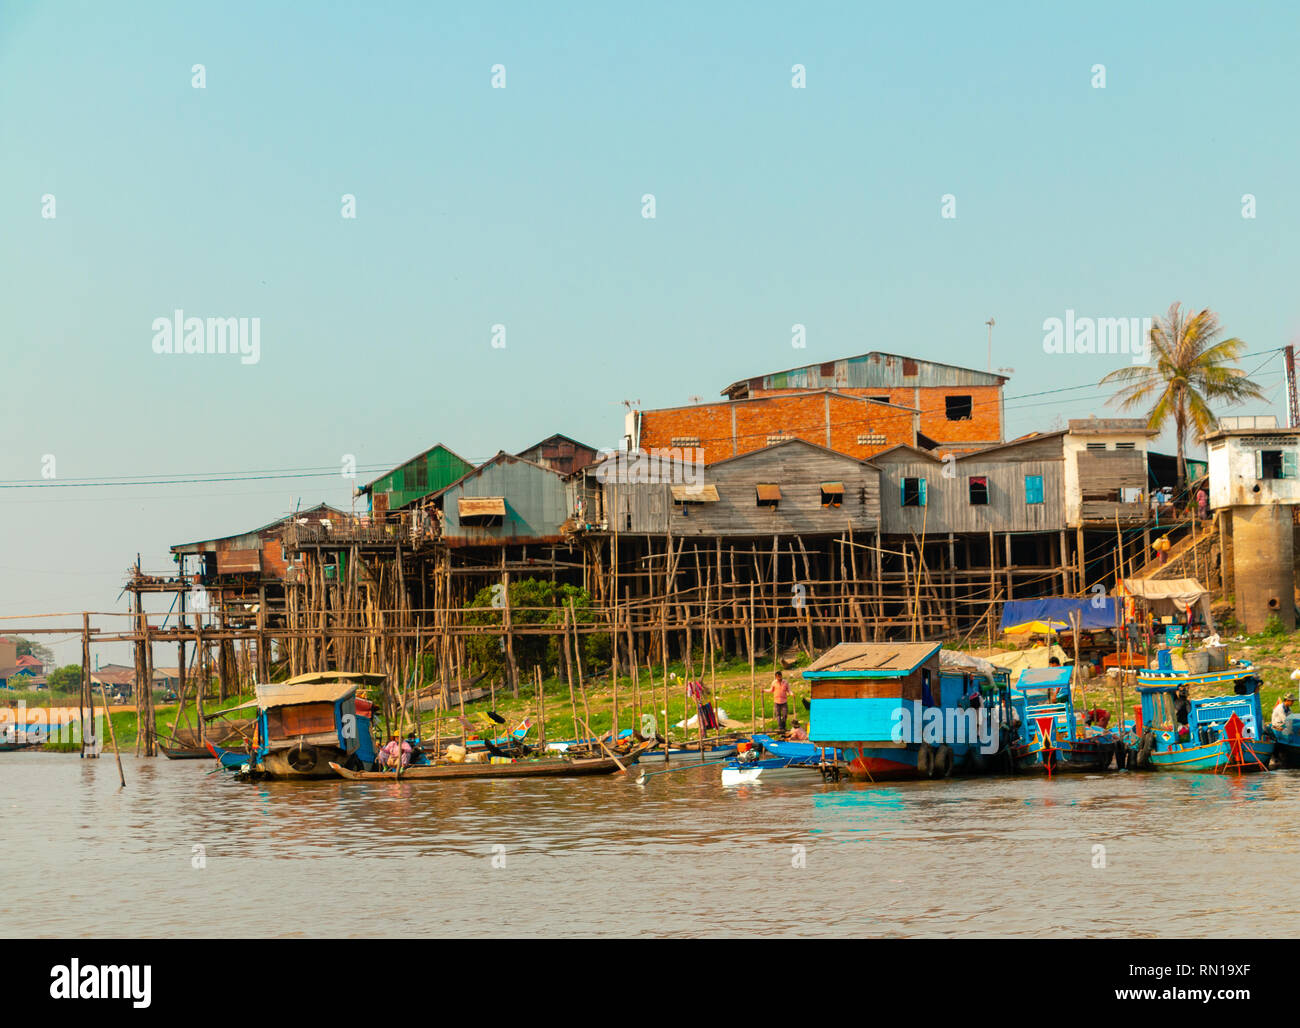 Les maisons en bois sur pilotis abritent de nombreuses familles dans le village flottant sur la rivière Tonle Sap, Kampong Chhnang, Delta du Mékong, le Cambodge, l'Asie Banque D'Images